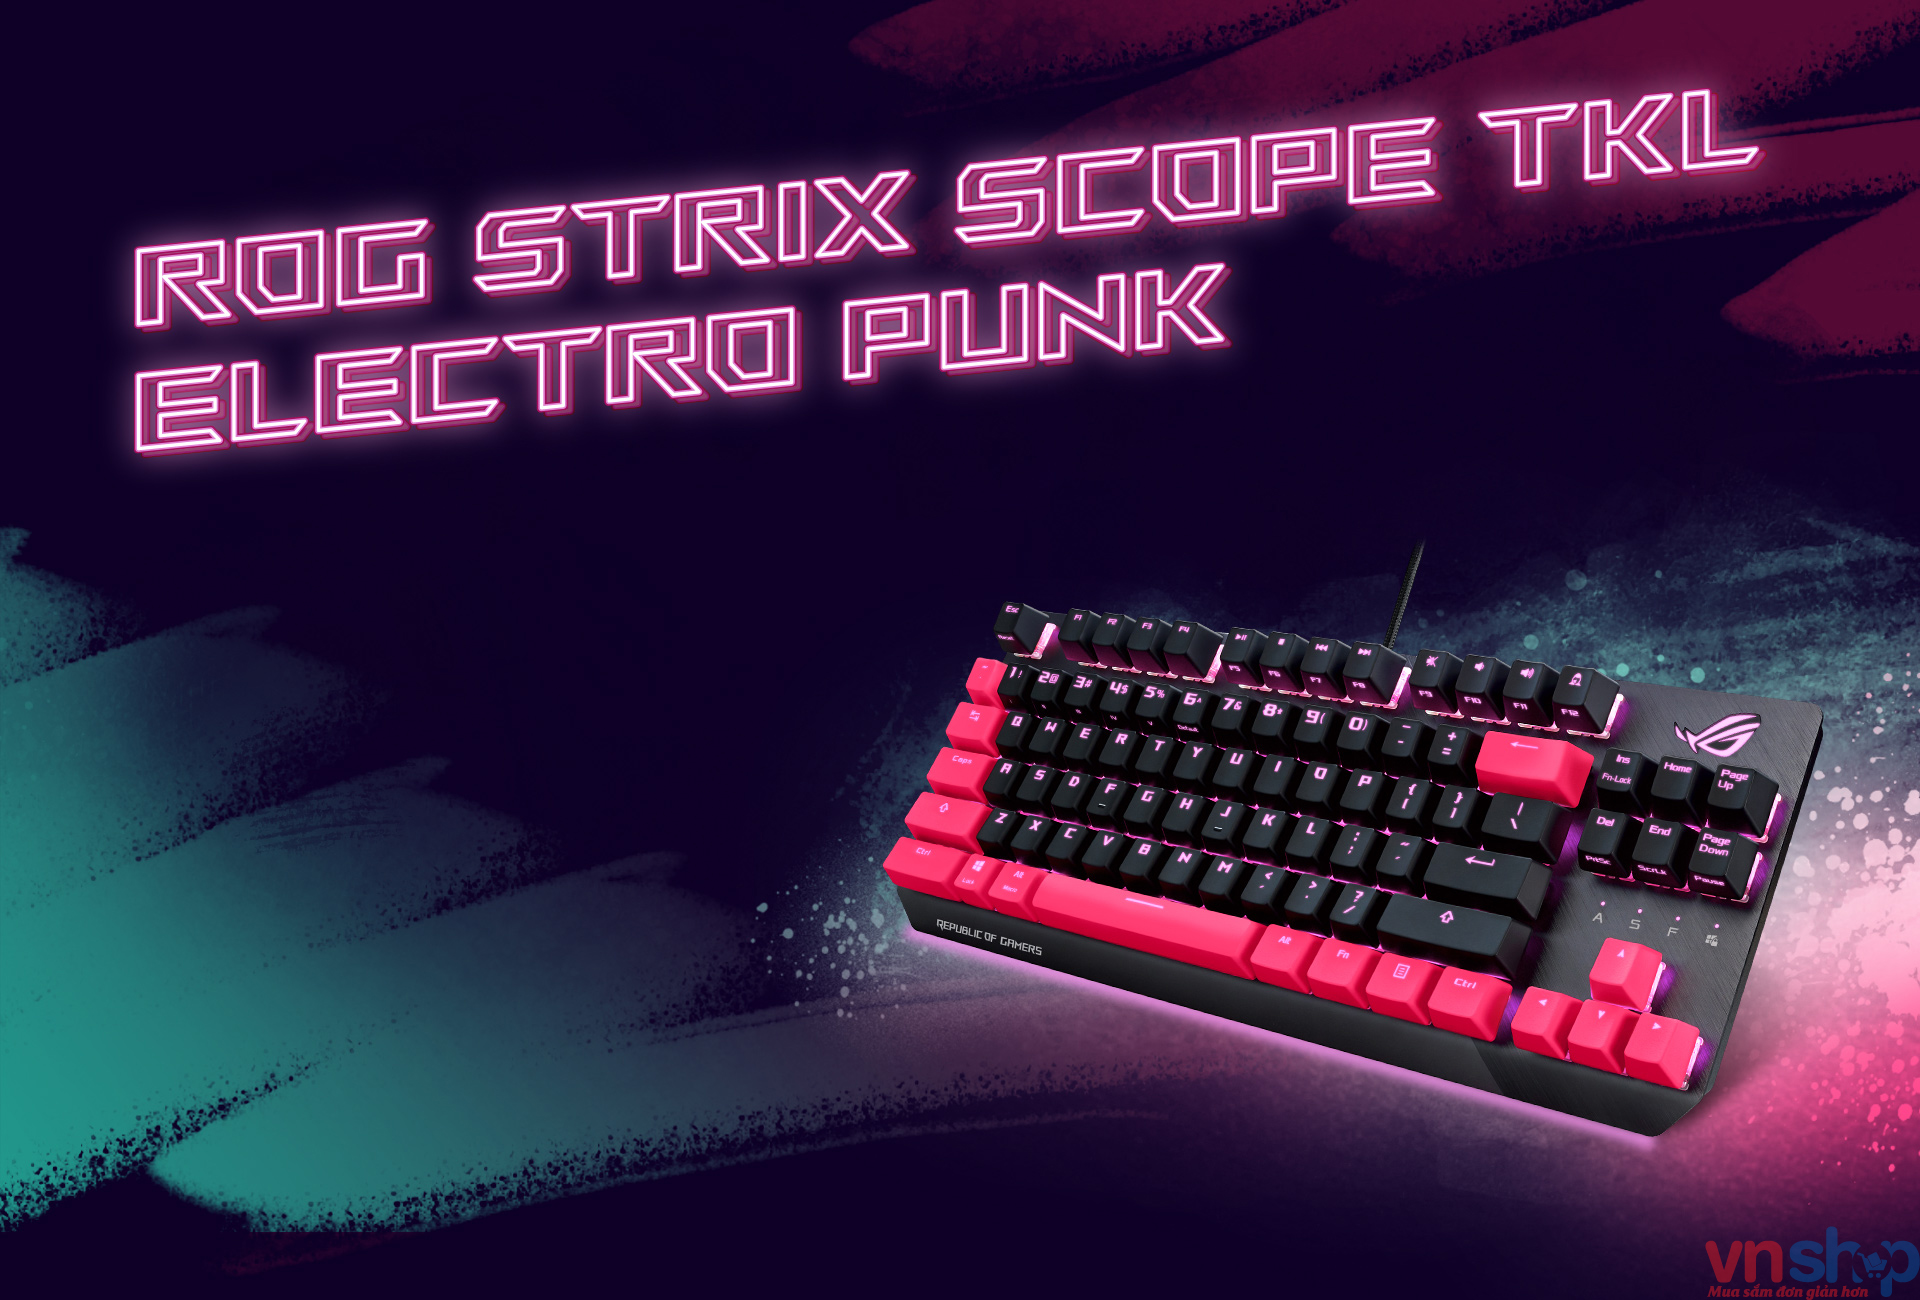 ROG Strix Scope TKL Electro Punk- gaming gear high end